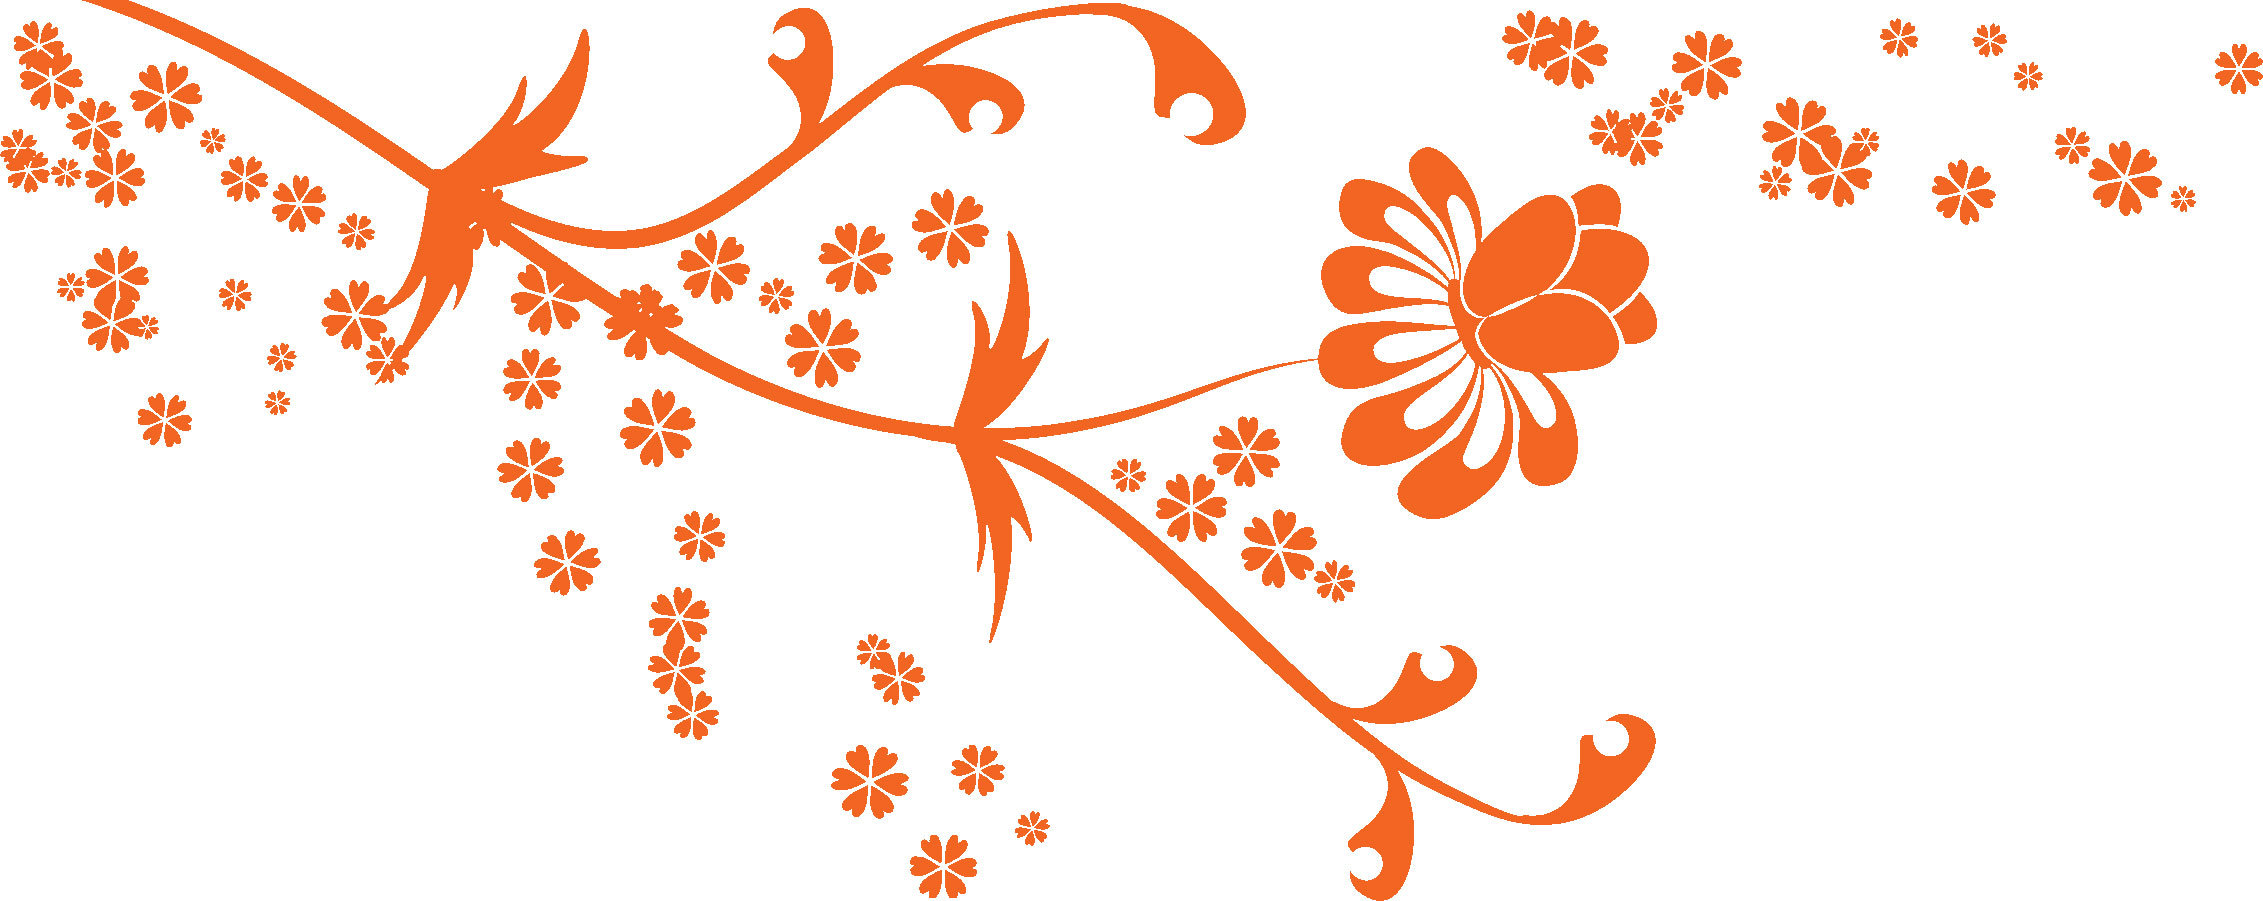 オレンジ色の花のイラスト フリー素材 No 138 オレンジ 横長